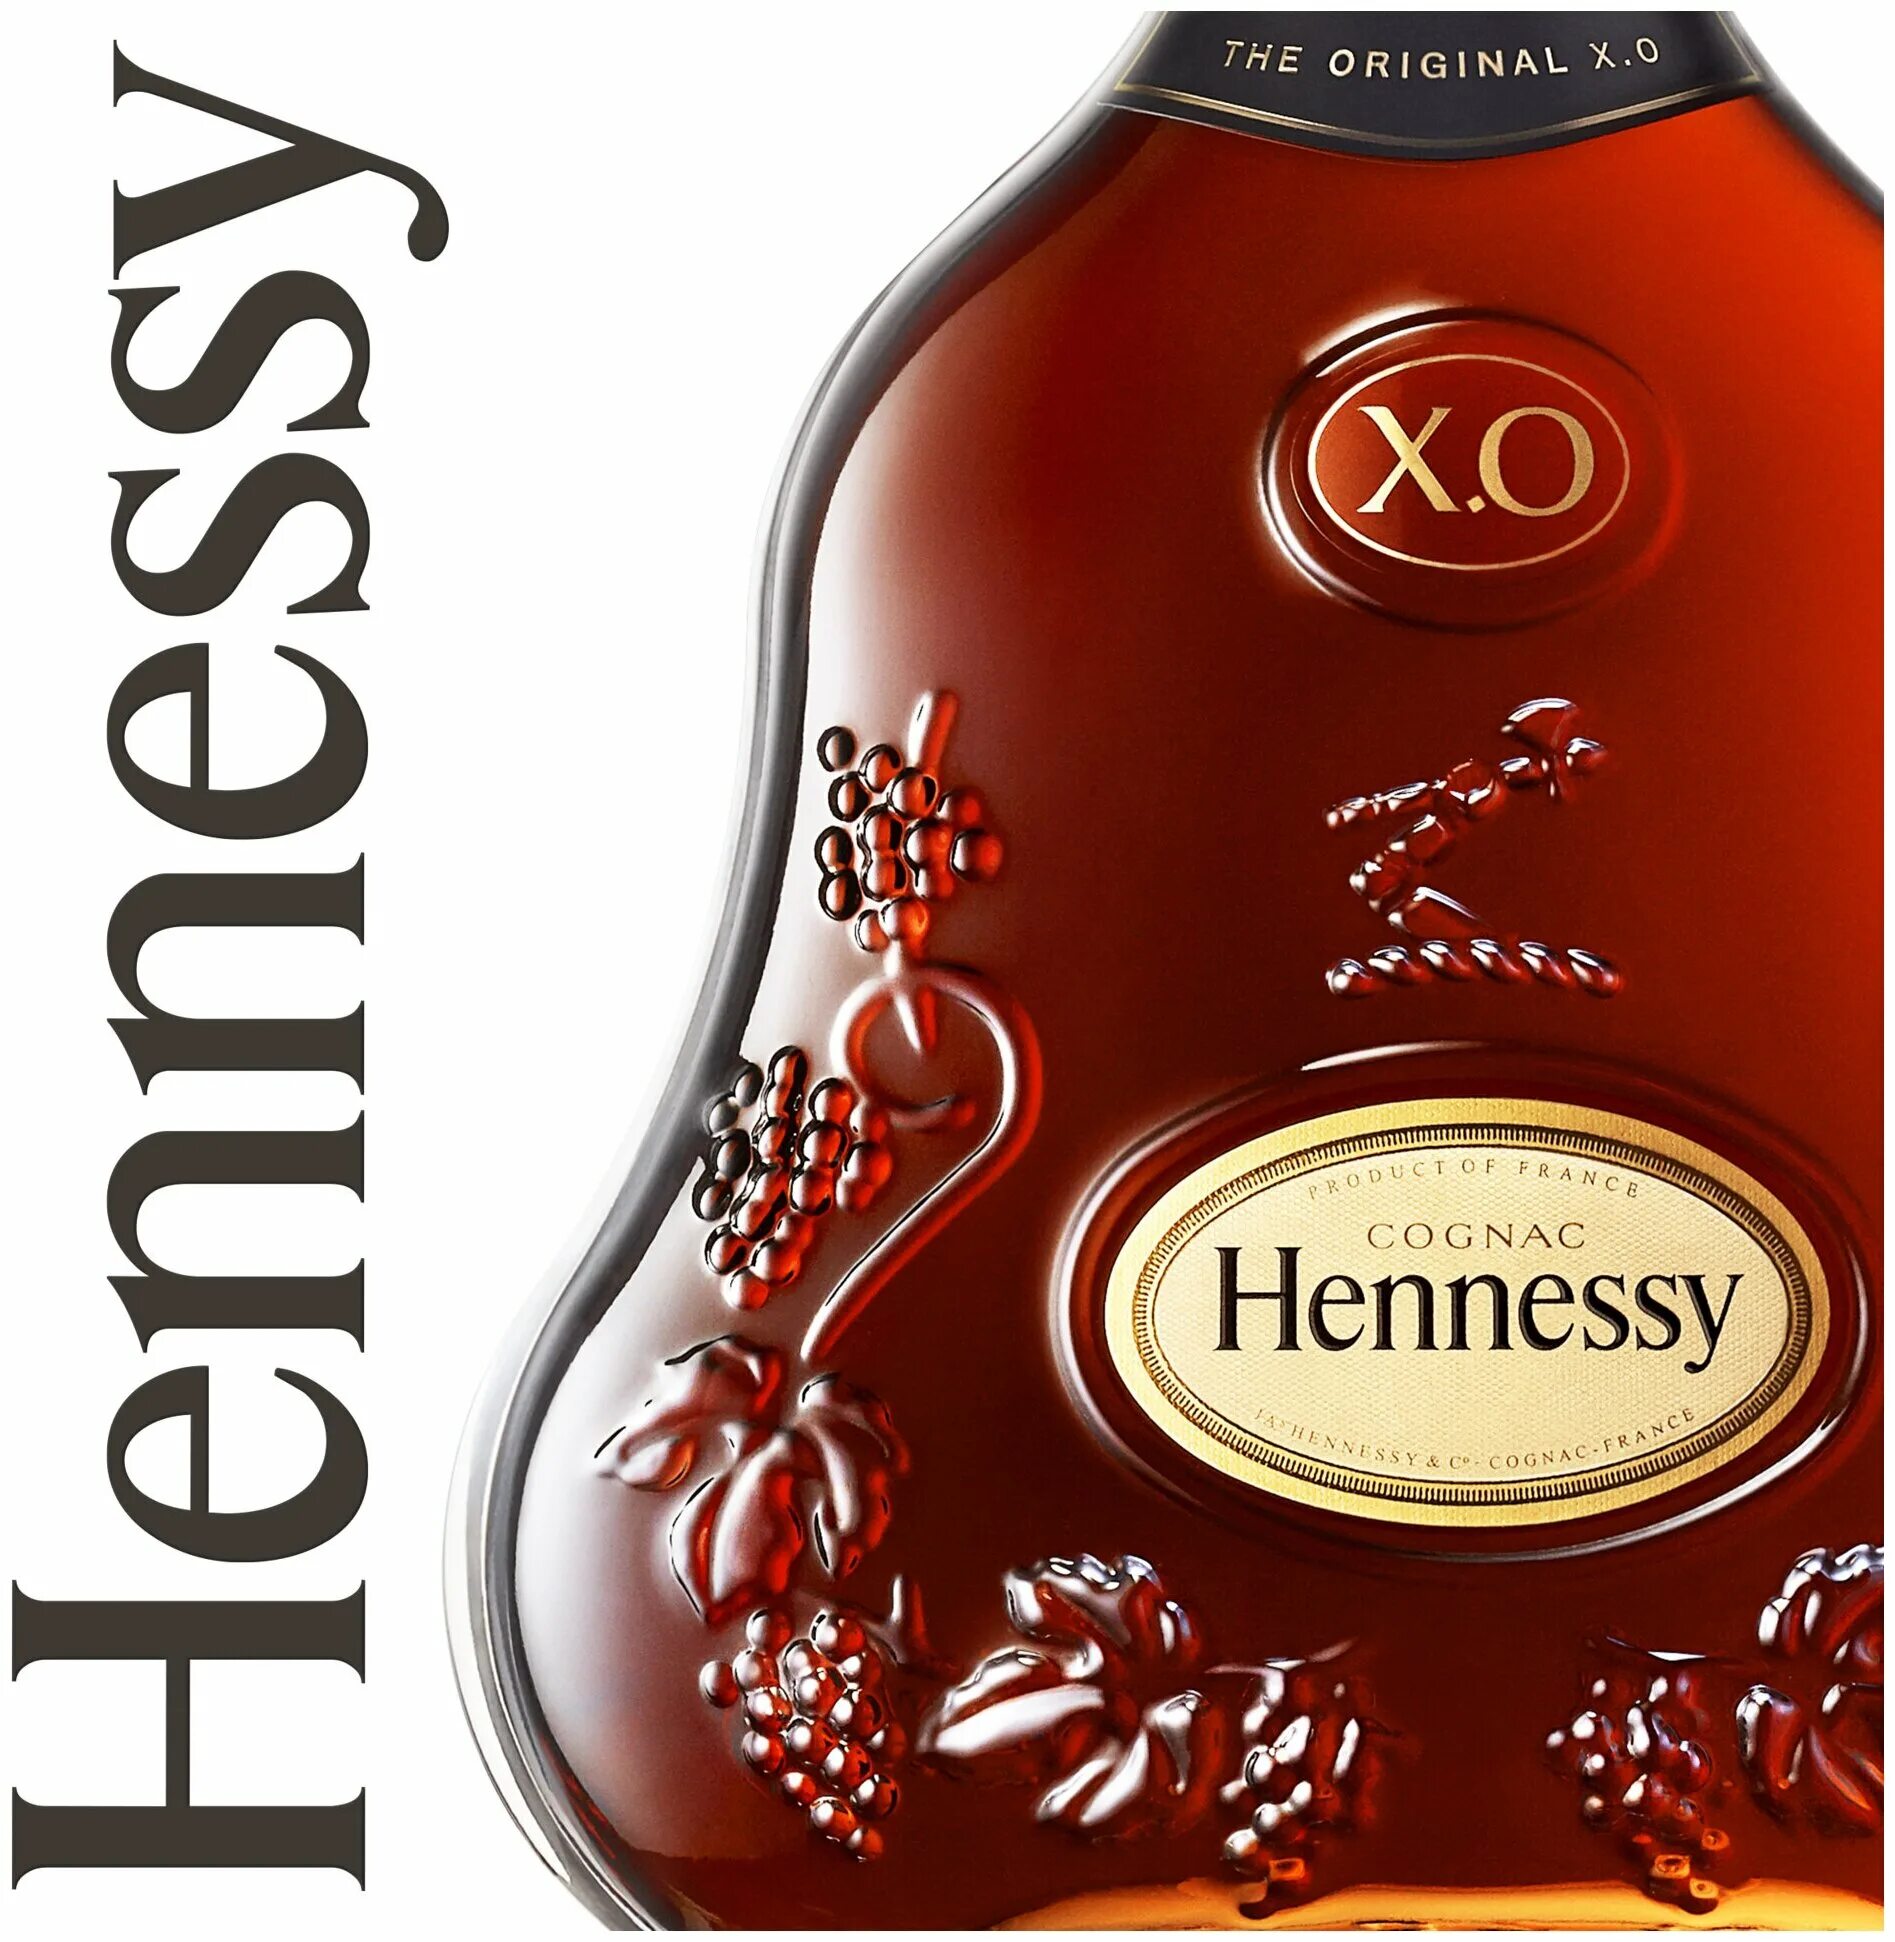 X o купить. Хеннесси Хо 0.5 Cognac. Хеннесси 5л коньяк. Коньяк Хеннесси XO 0.5. Коньяк Hennessy Cognac x.o 0.5.